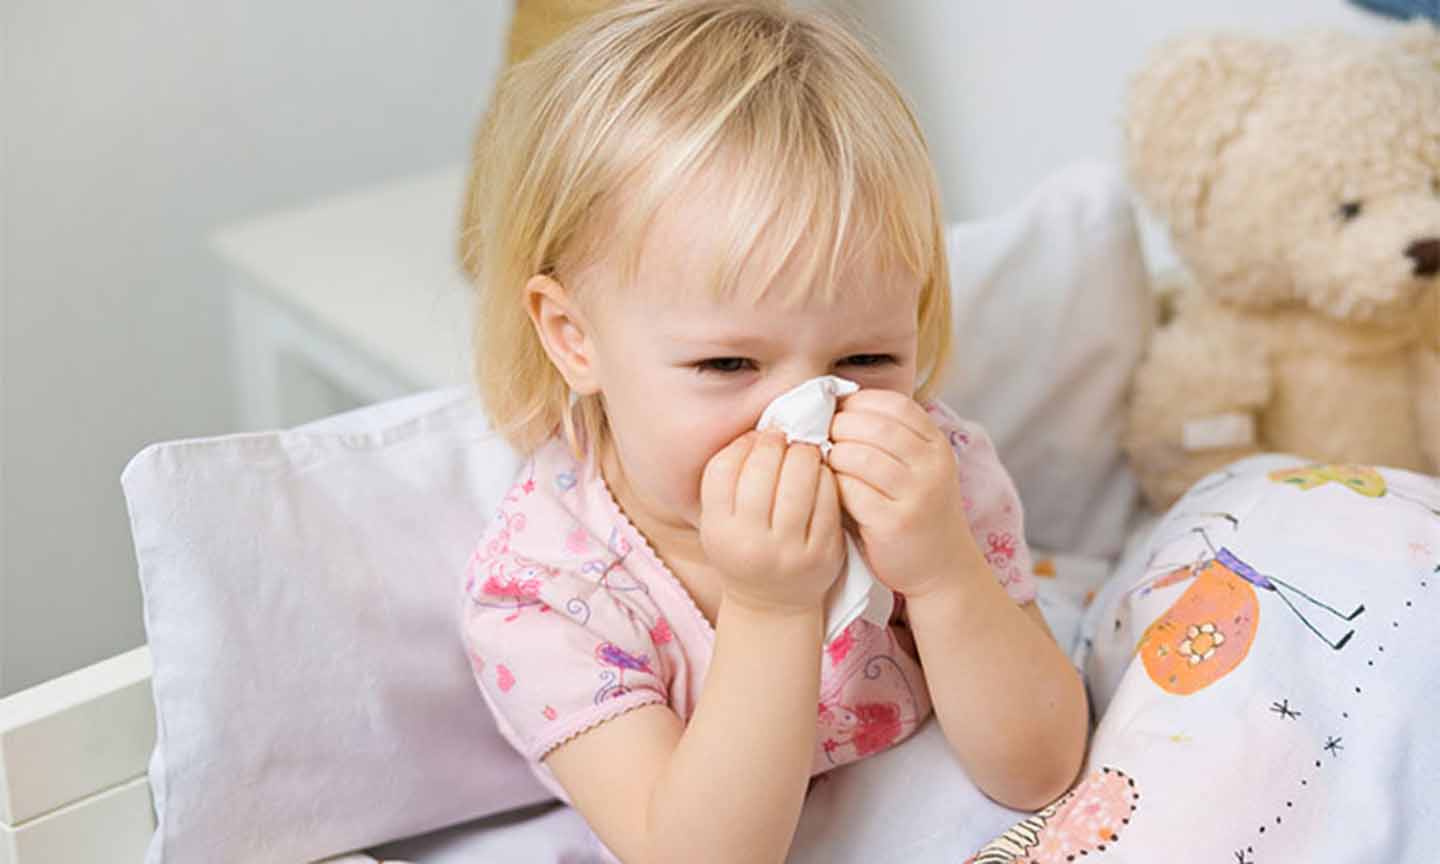 Viêm mũi là bệnh thường gặp ở trẻ nhỏ từ khoảng 6 tháng tuổi đến 7 - 8 tuổi.